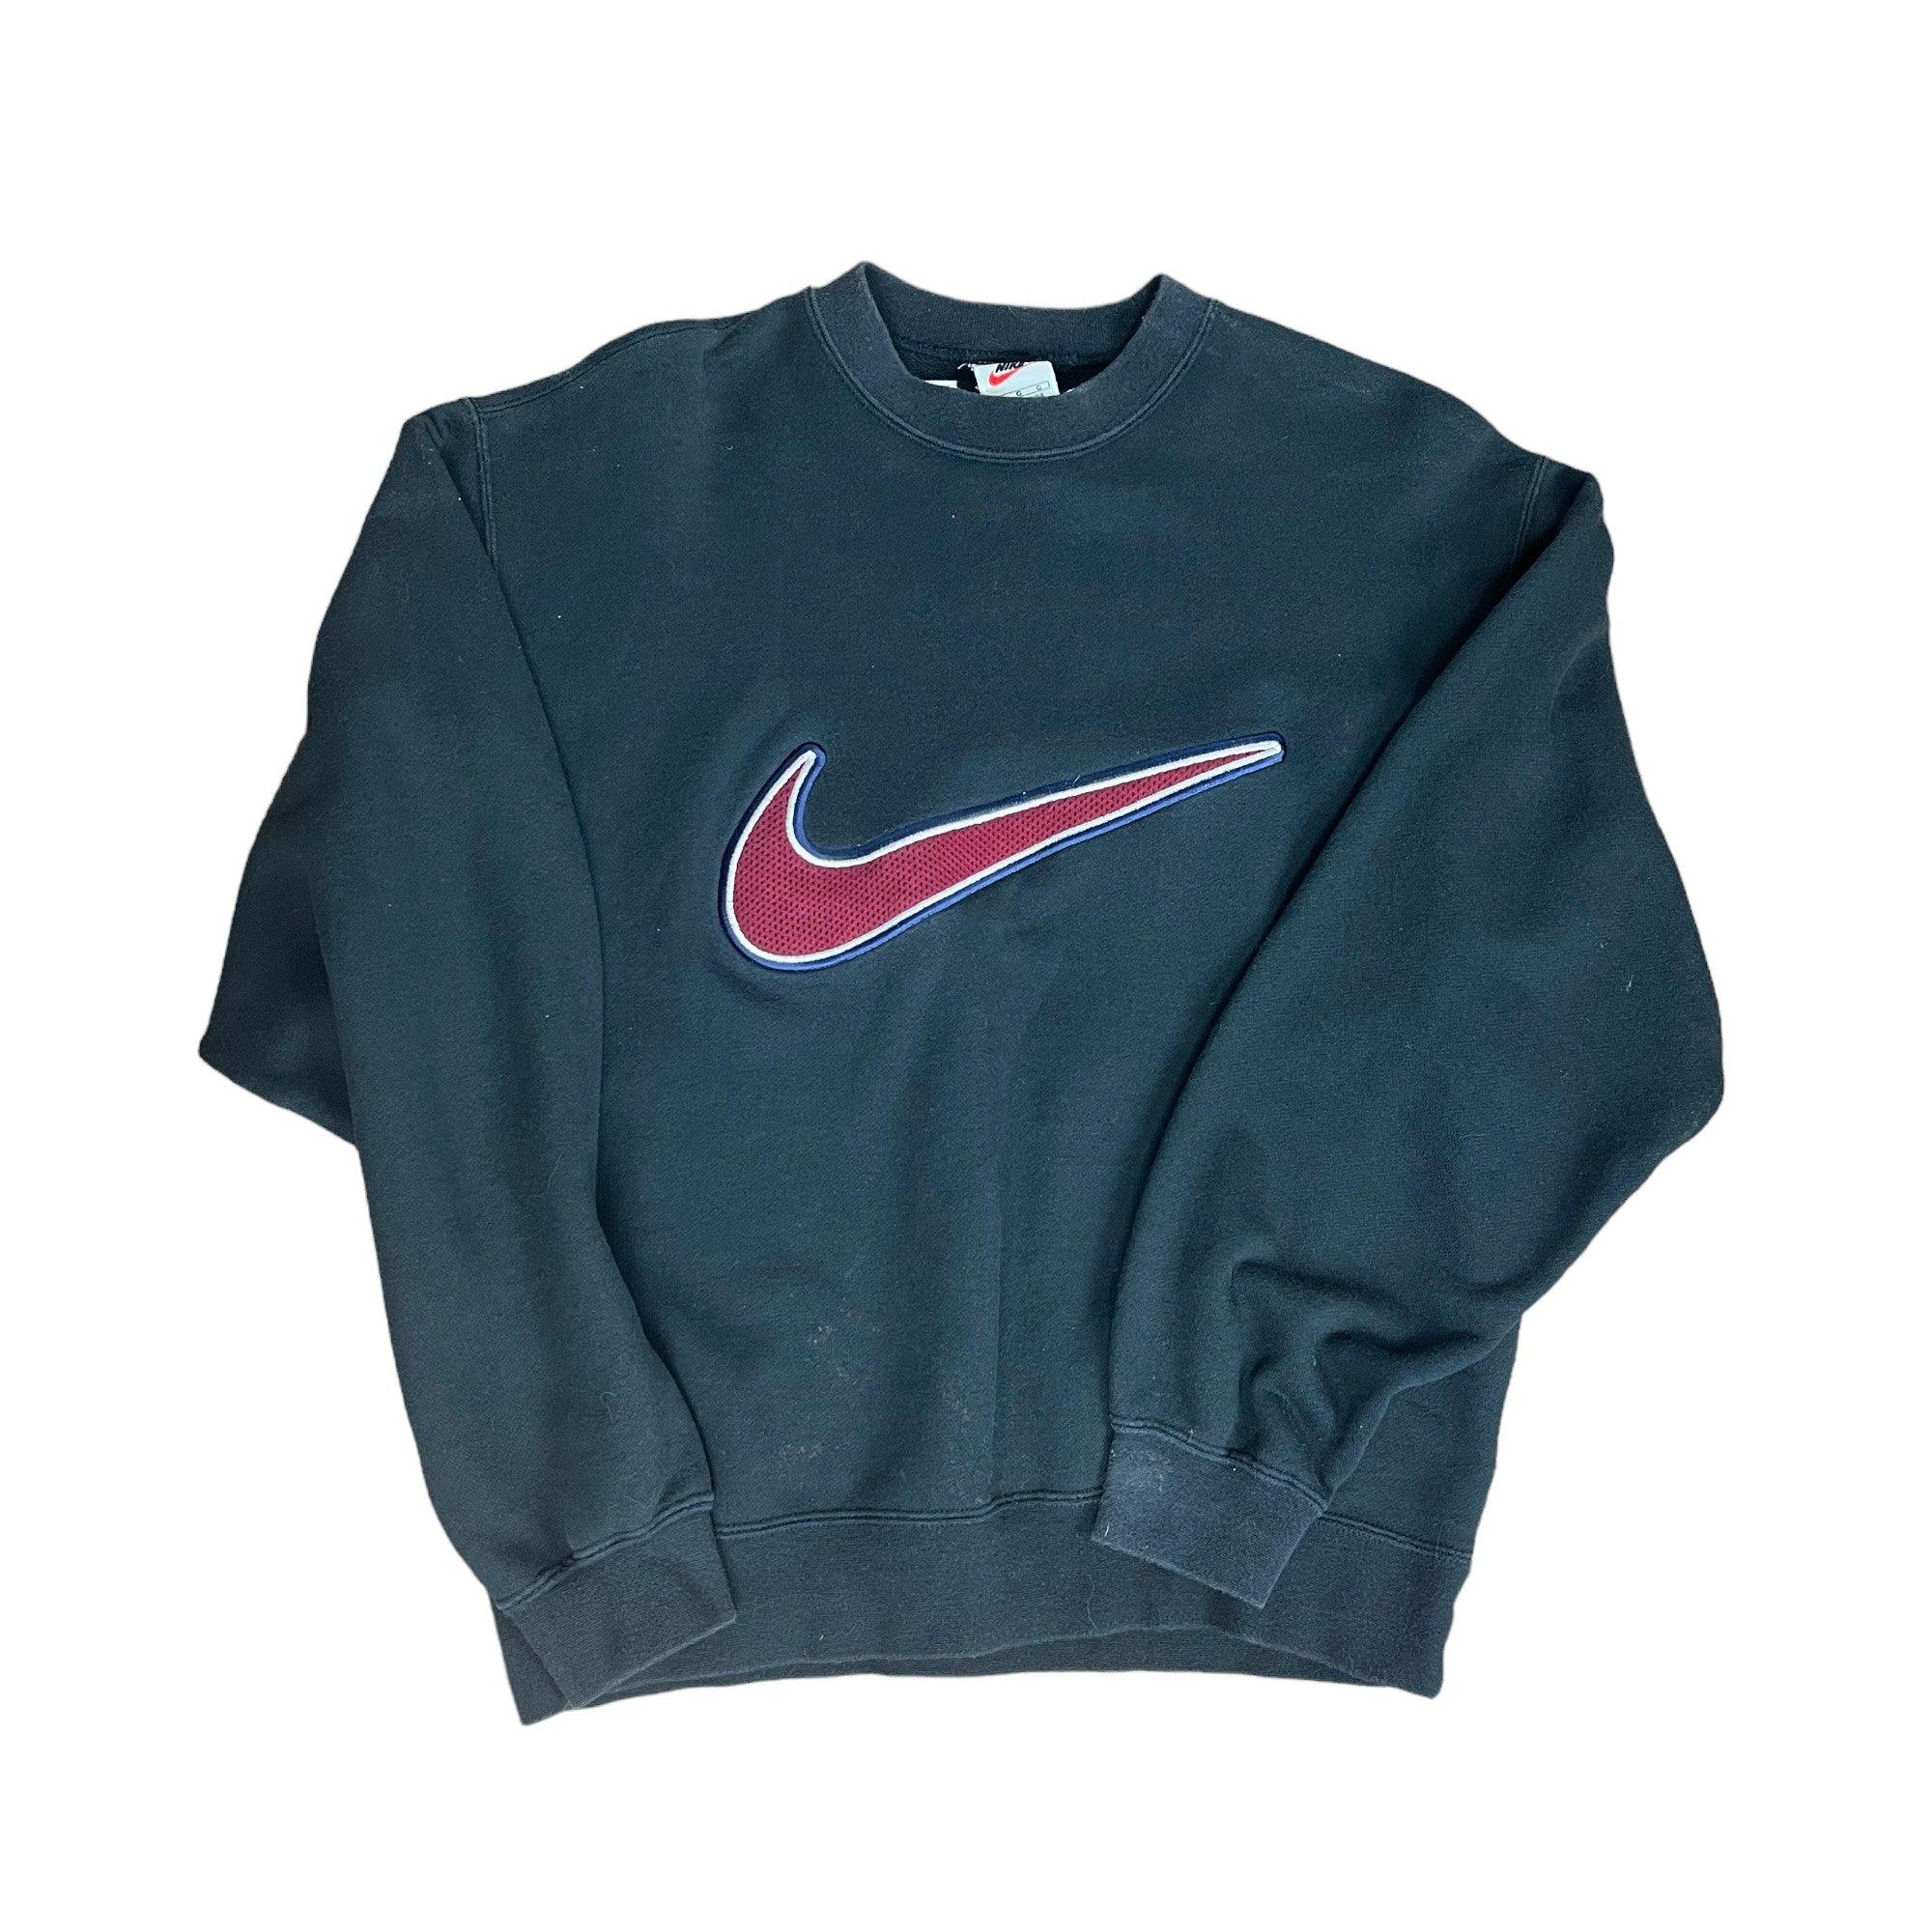 Vintage 90s Black Nike Sweatshirt - Large - The Streetwear Studio